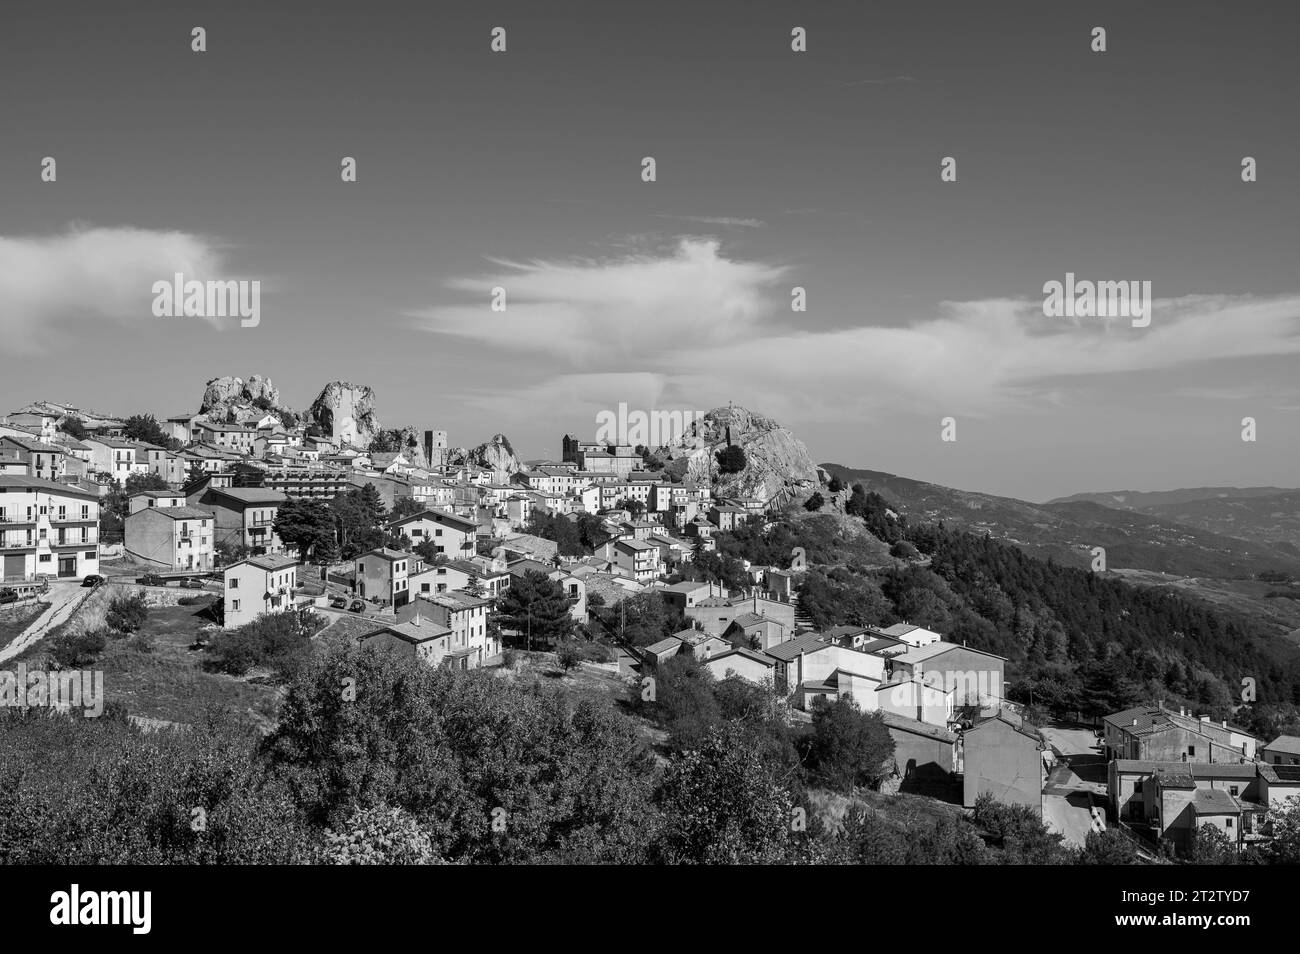 Es ist eine italienische Stadt mit 732 Einwohnern in der Provinz Isernia in Molise, berühmt für das Samnitische Heiligtum. Stockfoto